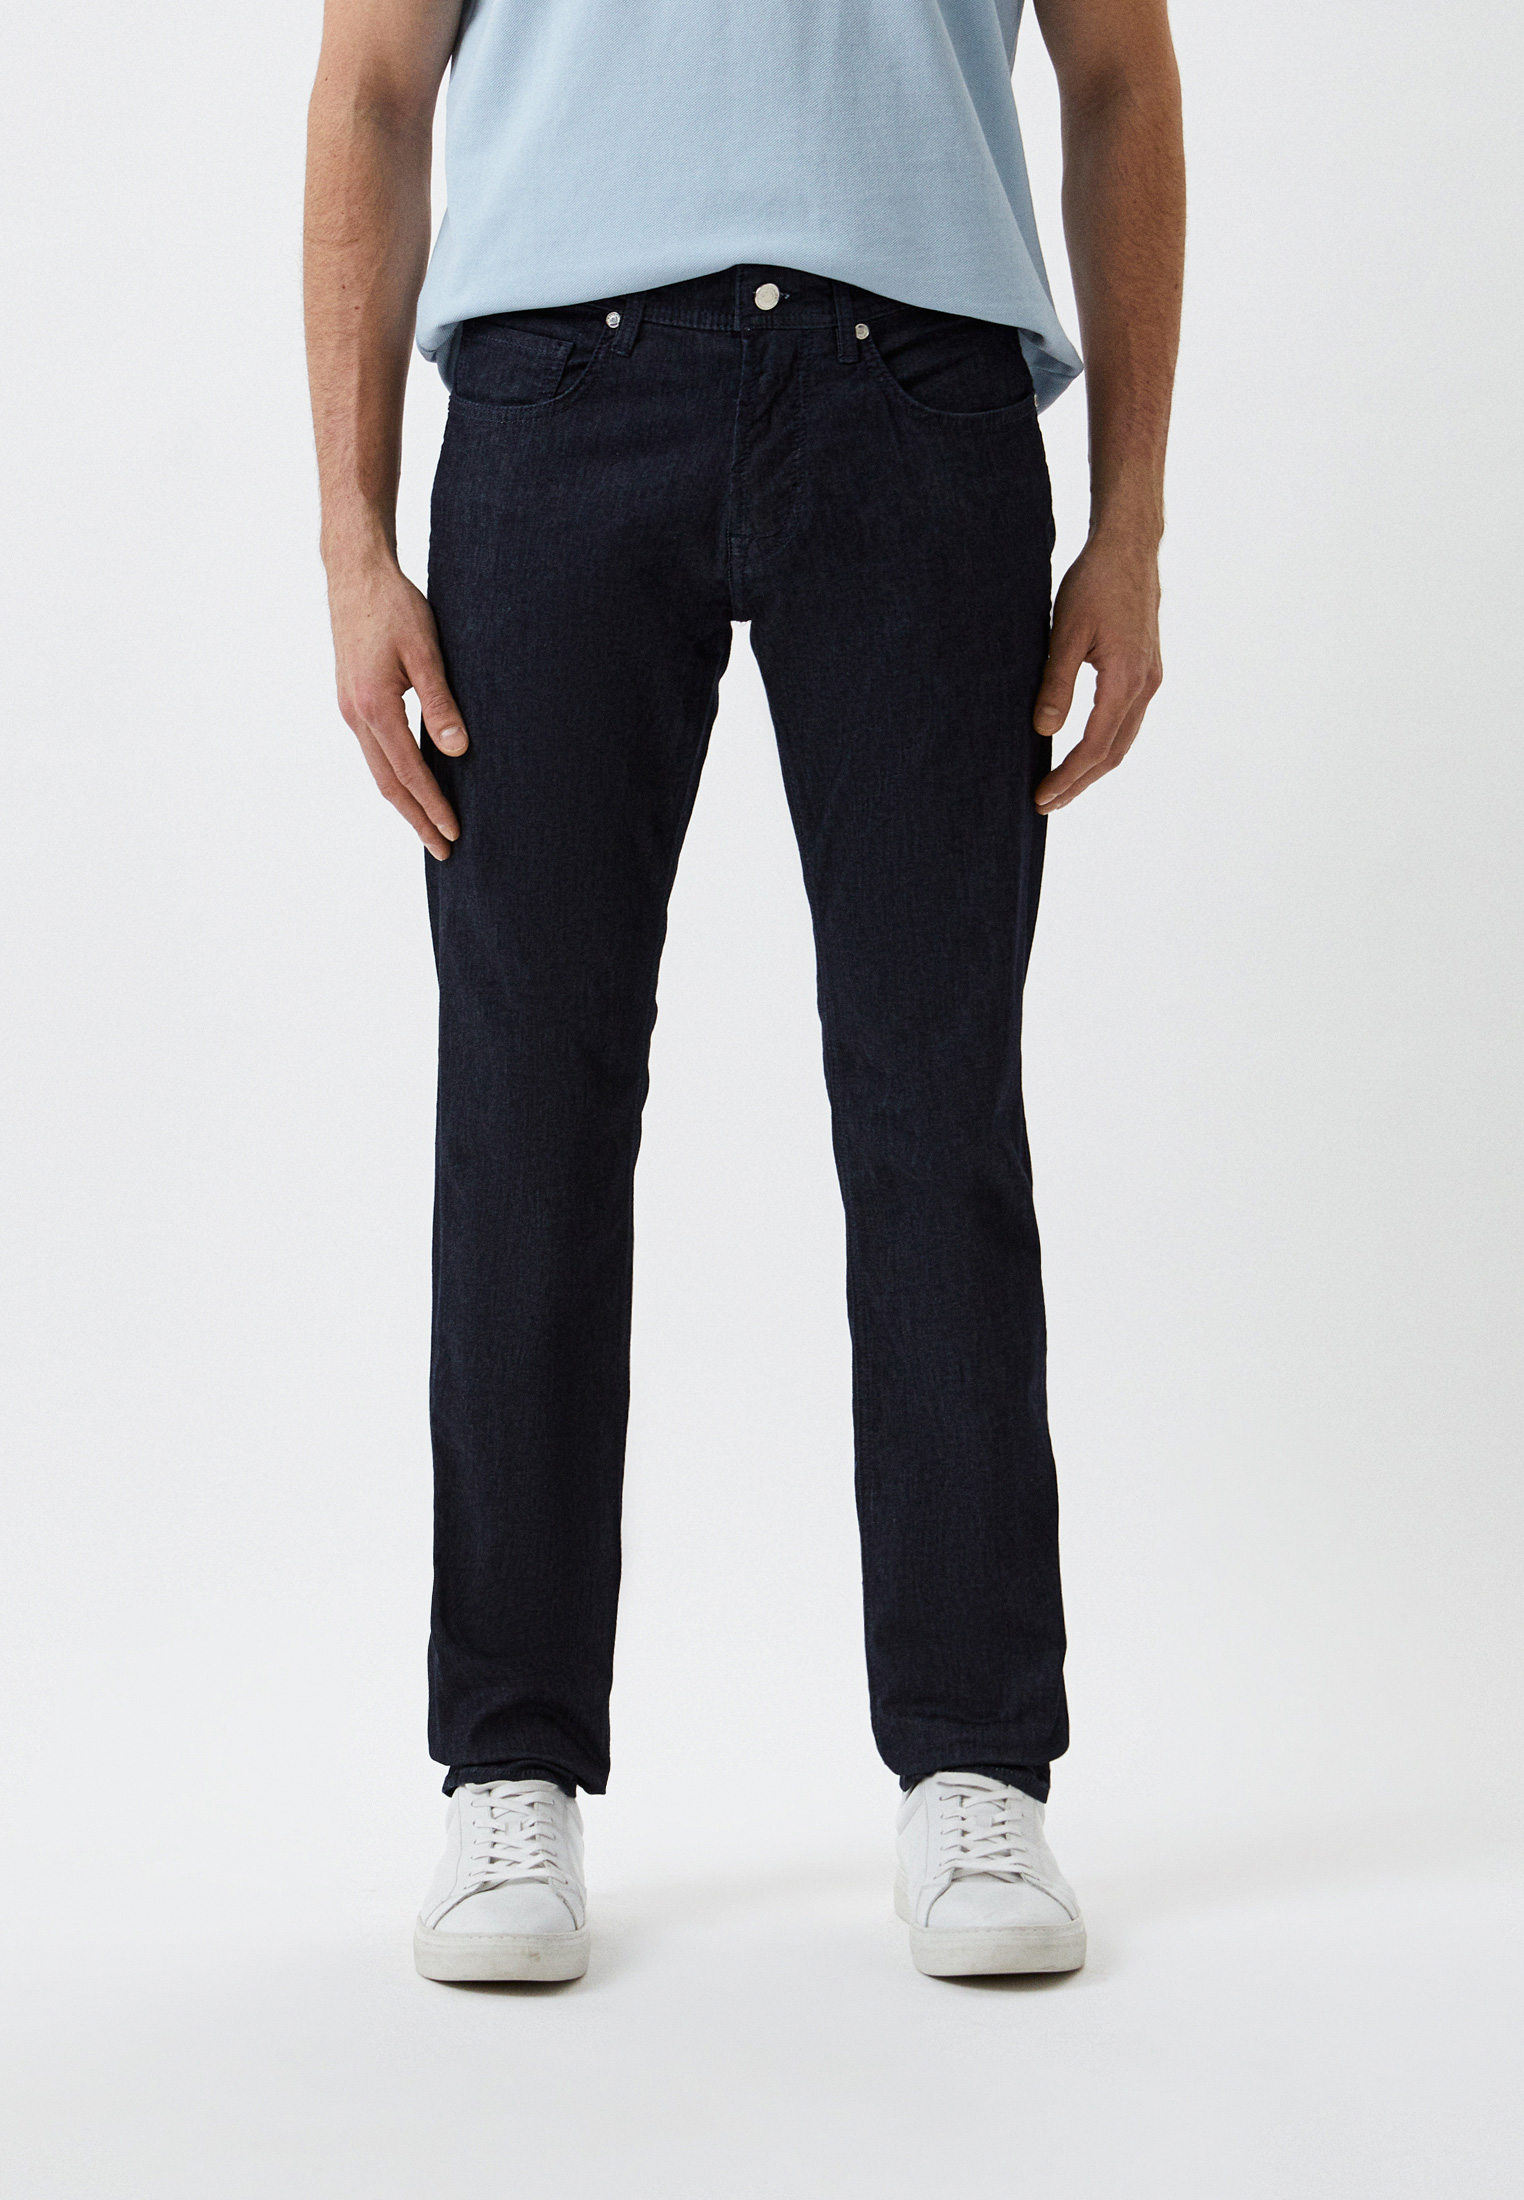 Мужские прямые джинсы BALDESSARINI (Балдессарини) B1 16502.1439: изображение 1